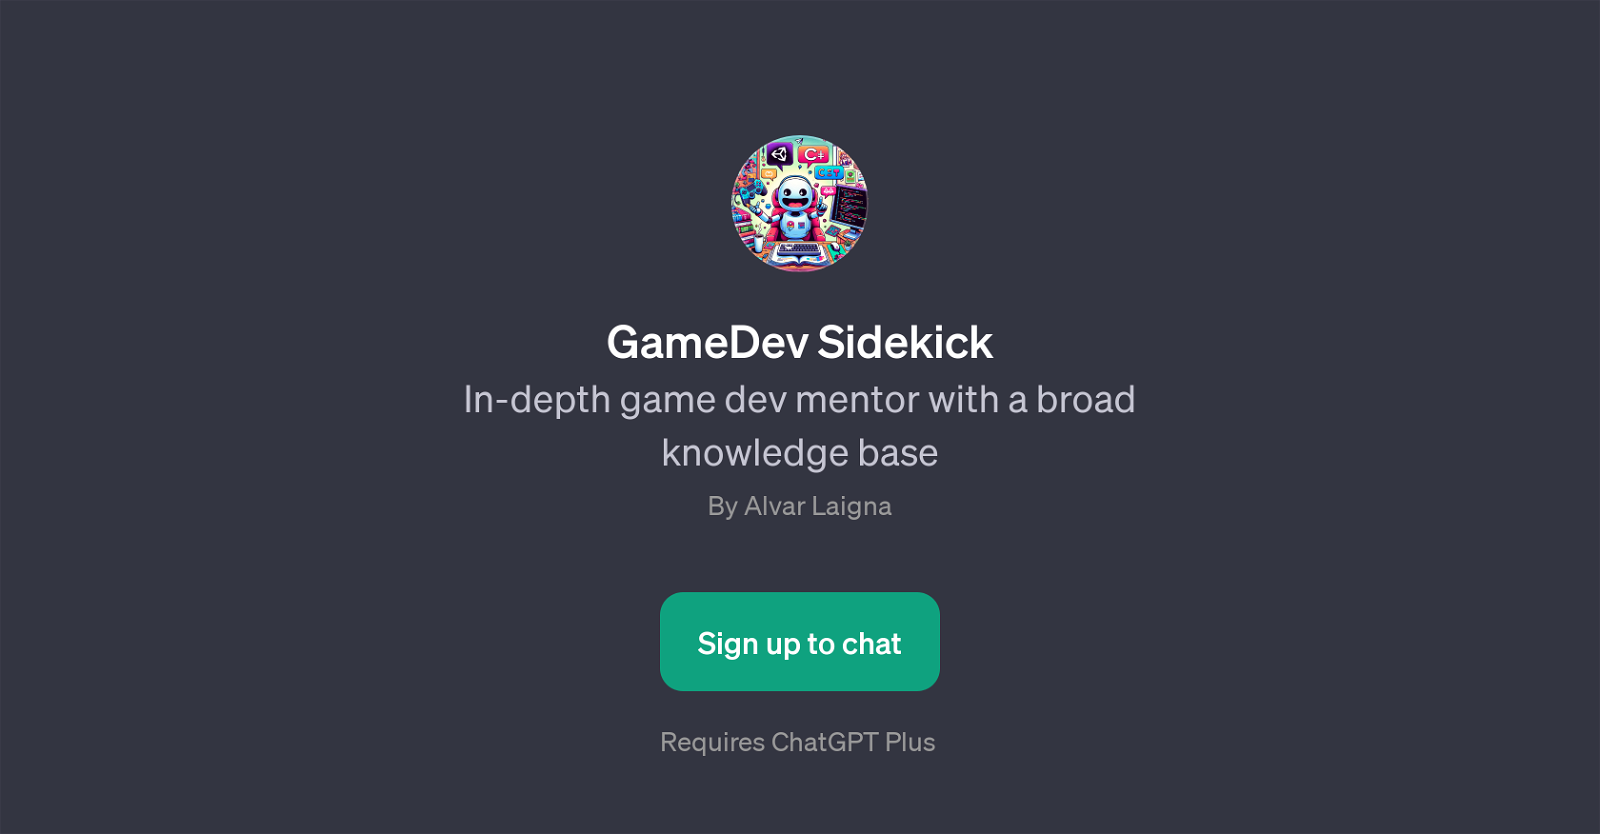 GameDev Sidekick website